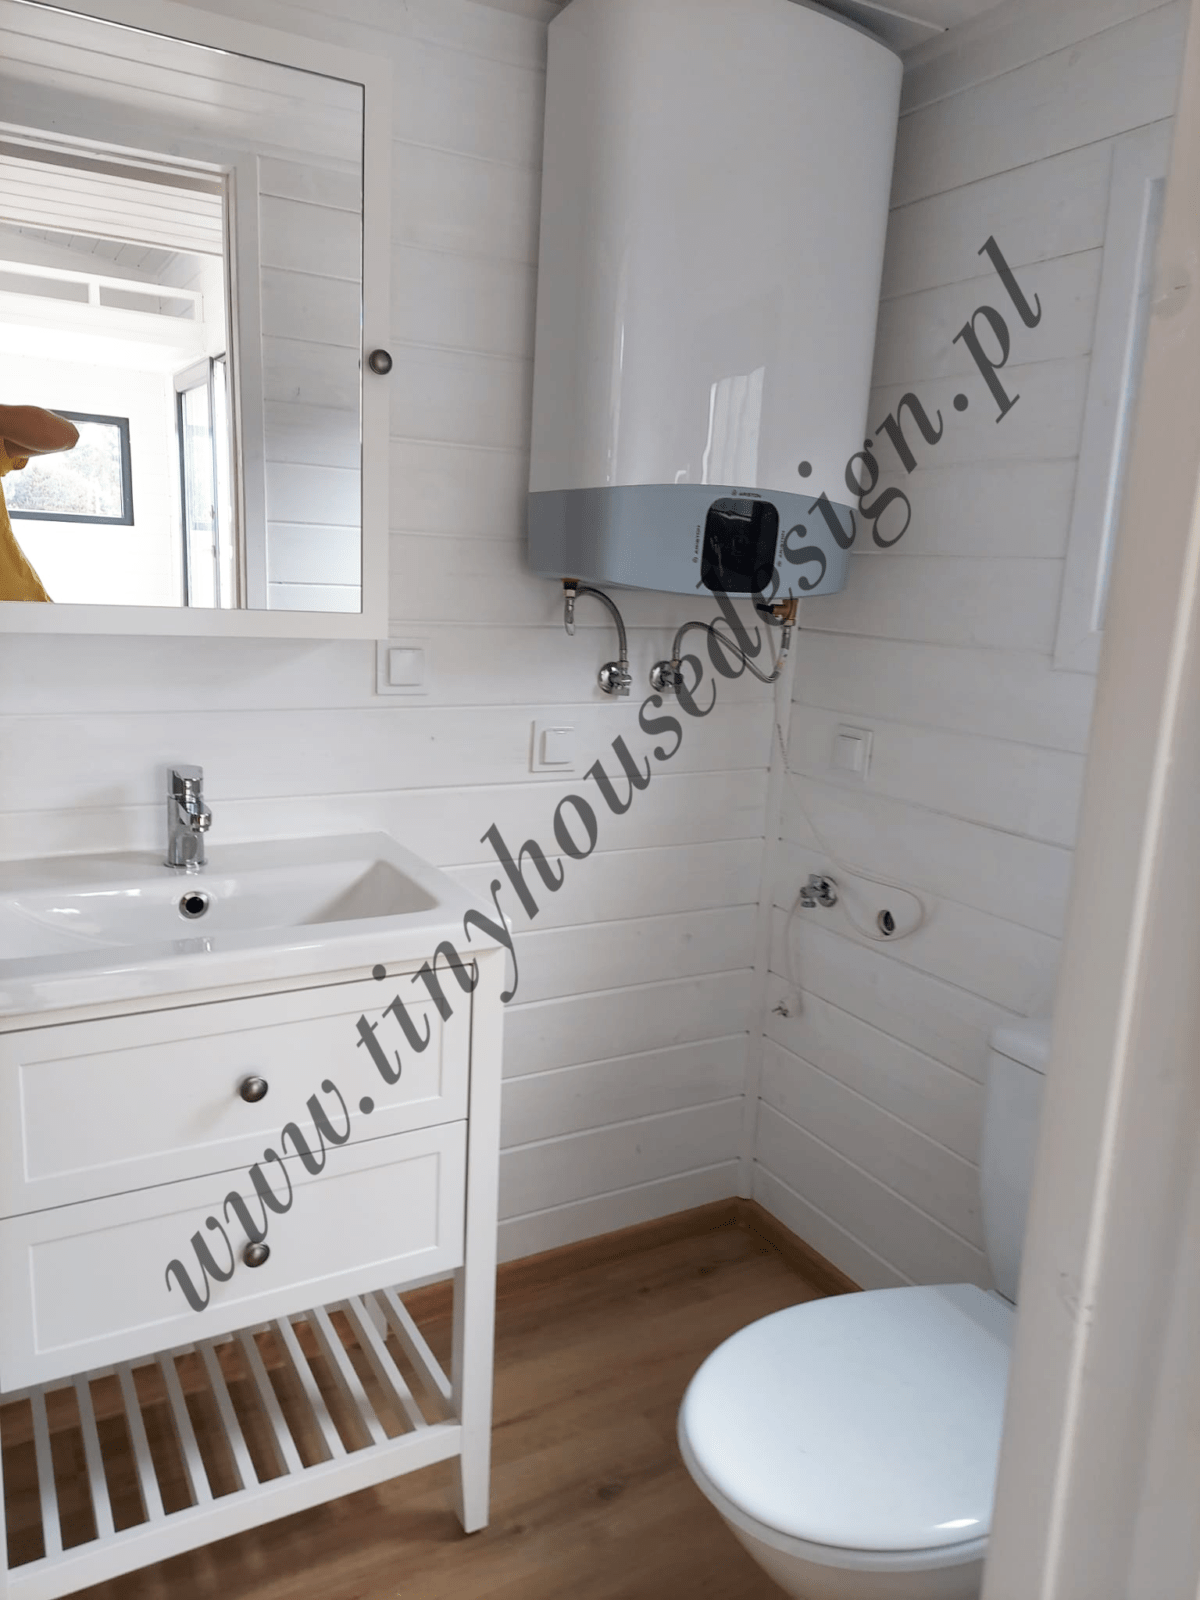 Łazienka w domku Tiny House Design - widok na umywalkę z szafką, lustro, boiler grzewczy i toaletę.